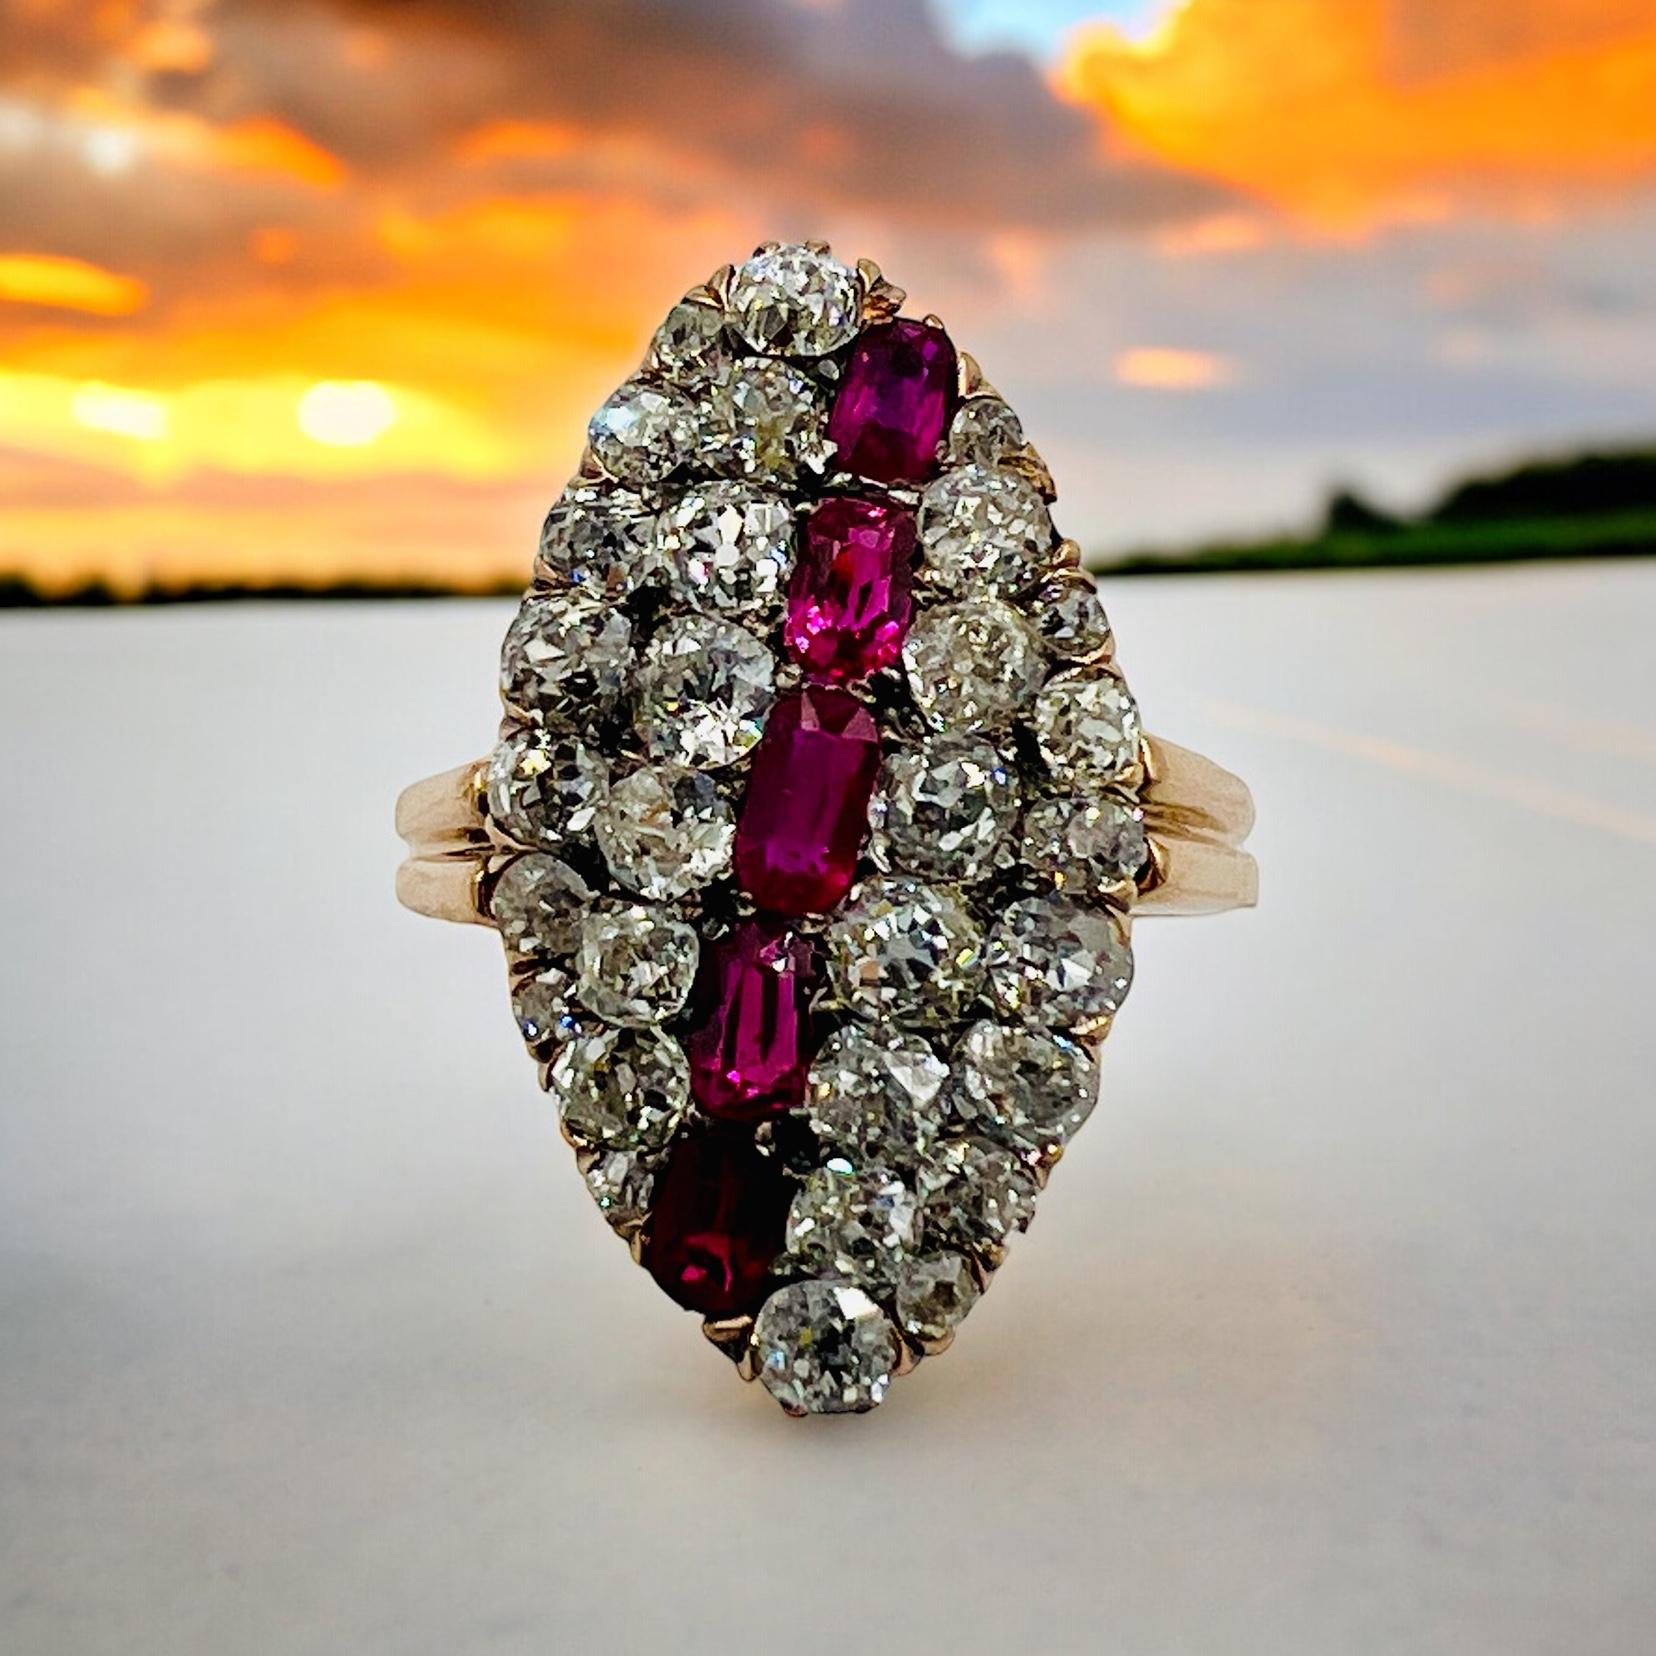 Viktorianischer Rubin-Diamant-Goldring, circa 1890er Jahre.

Dieser viktorianische Rubin-Diamant-Goldring in Navette-Form ist ein zeitloses Schmuckstück, das die Eleganz und Opulenz der viktorianischen Ära verkörpert. Dieser mit viel Liebe zum